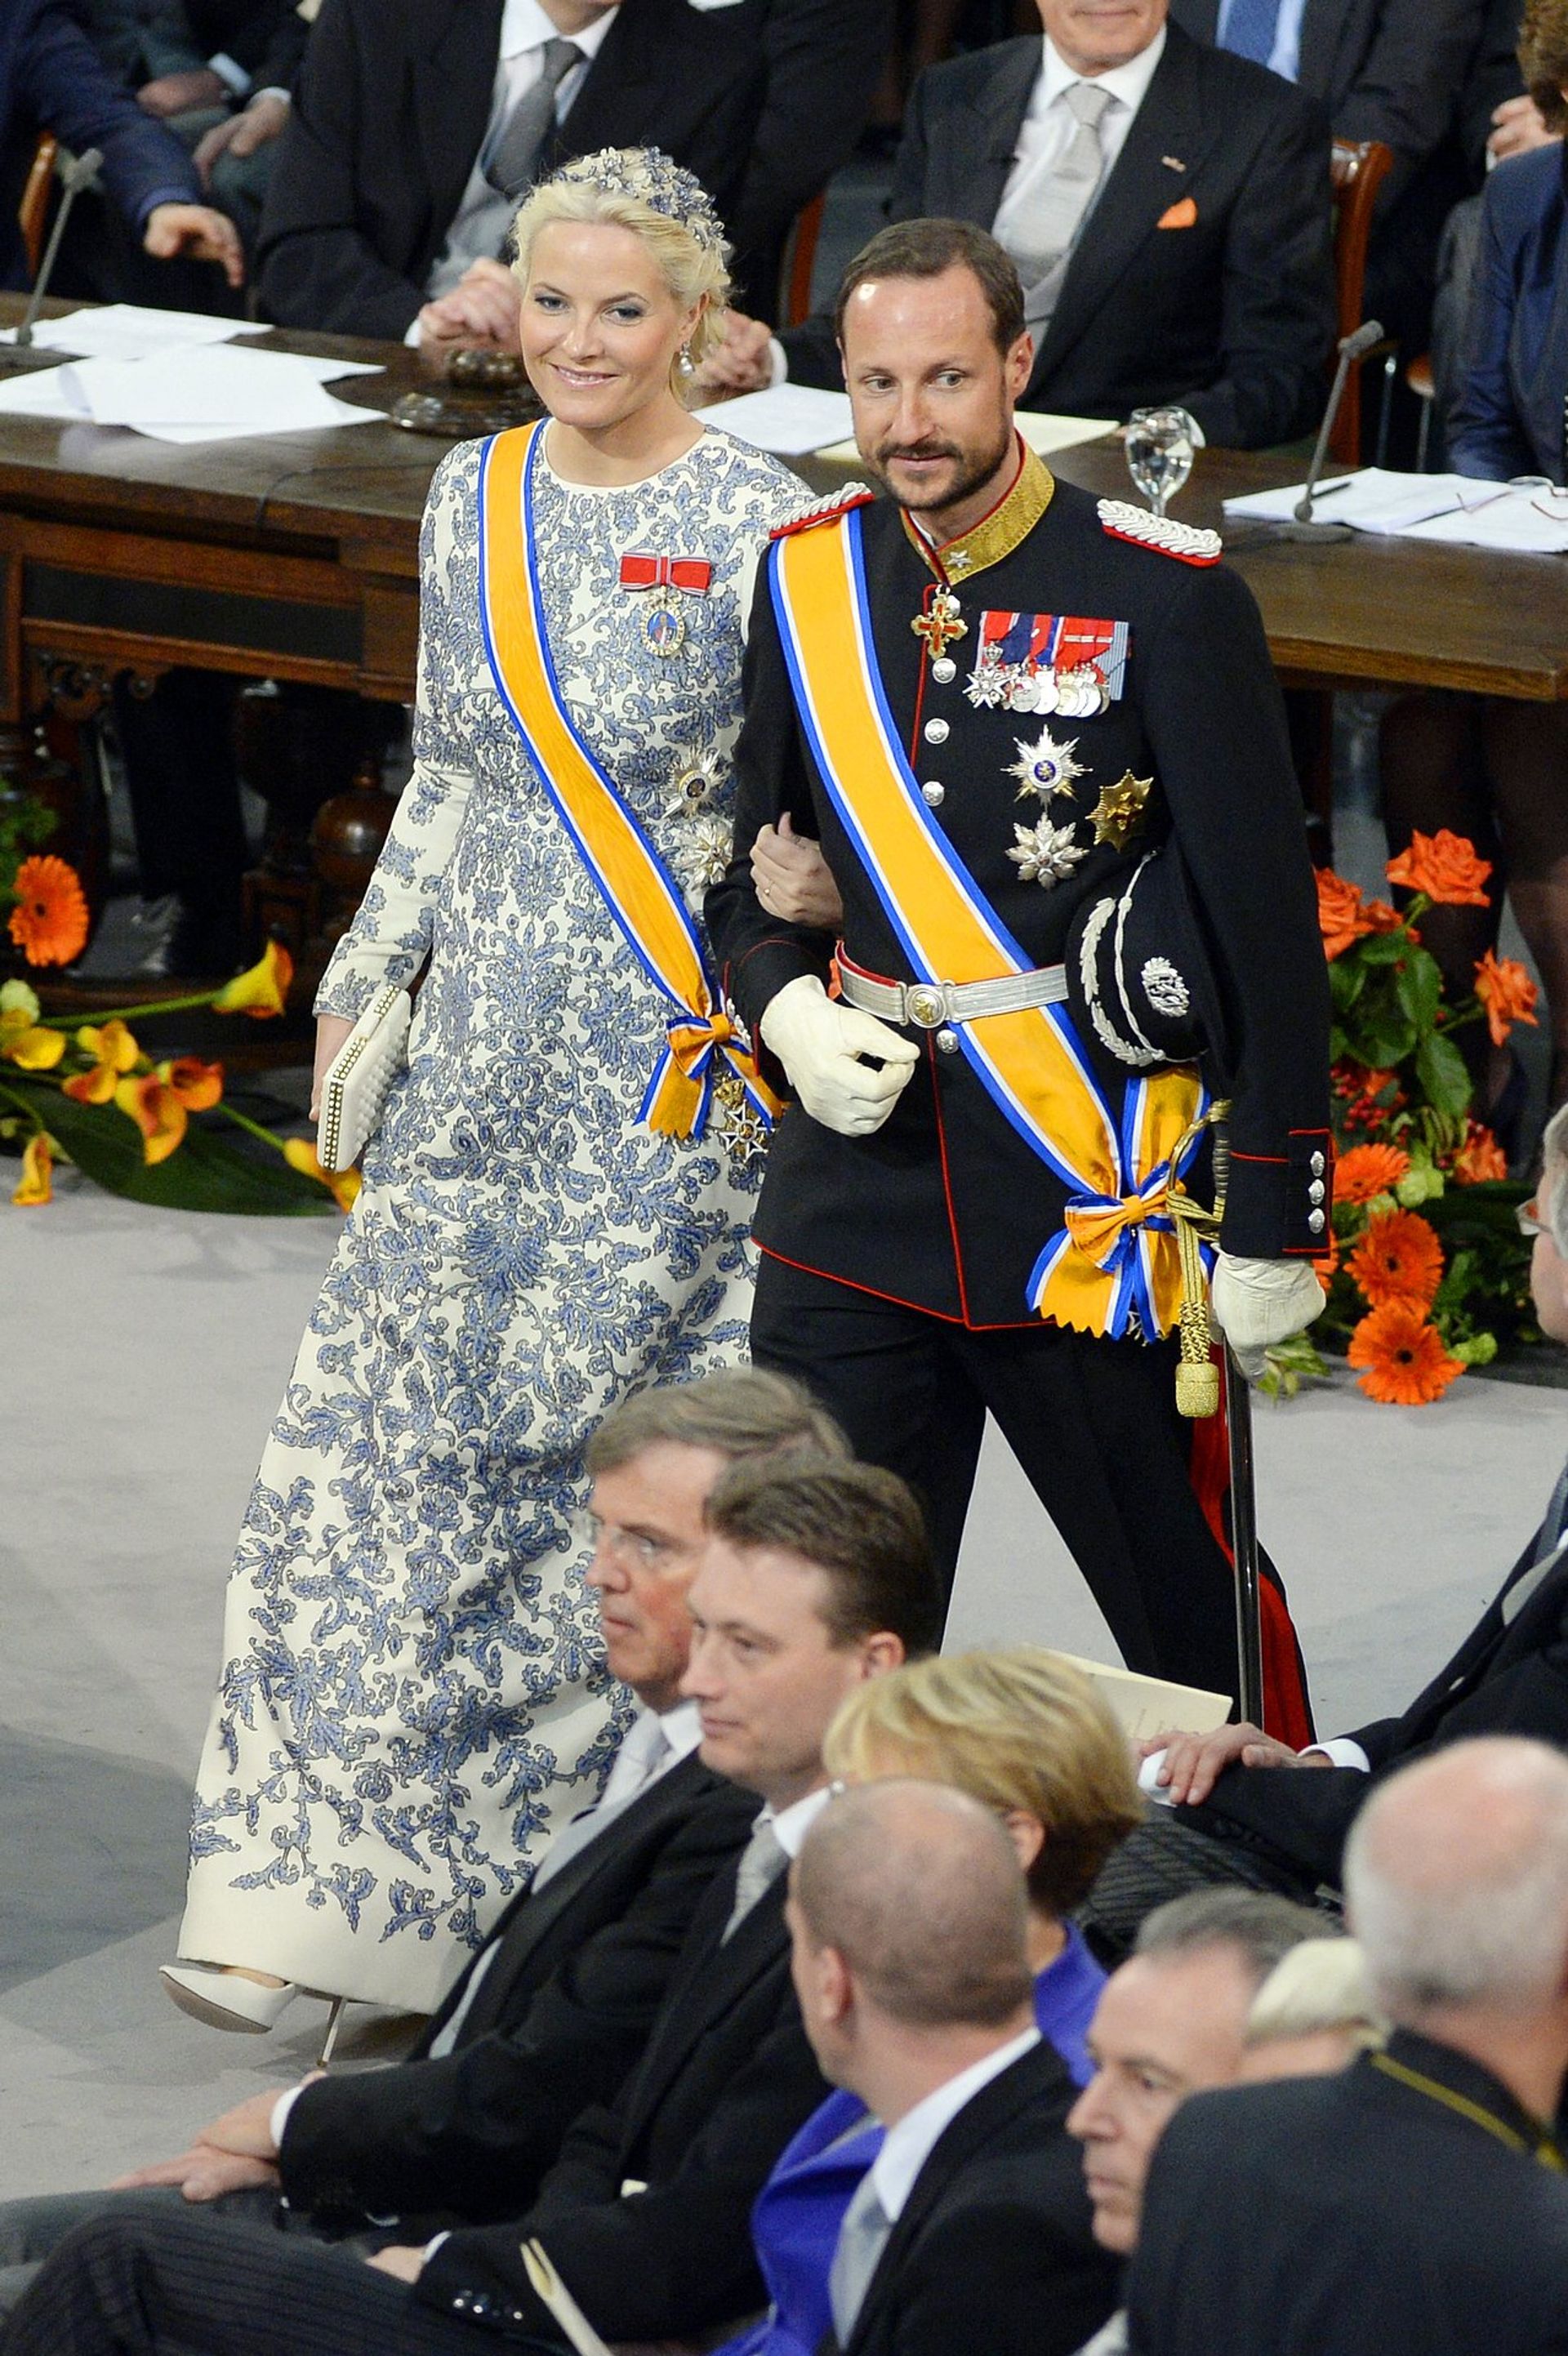 Mette-Marit aan de arm van Haakon tijdens de inhuldiging van koning Willem-Alexander.